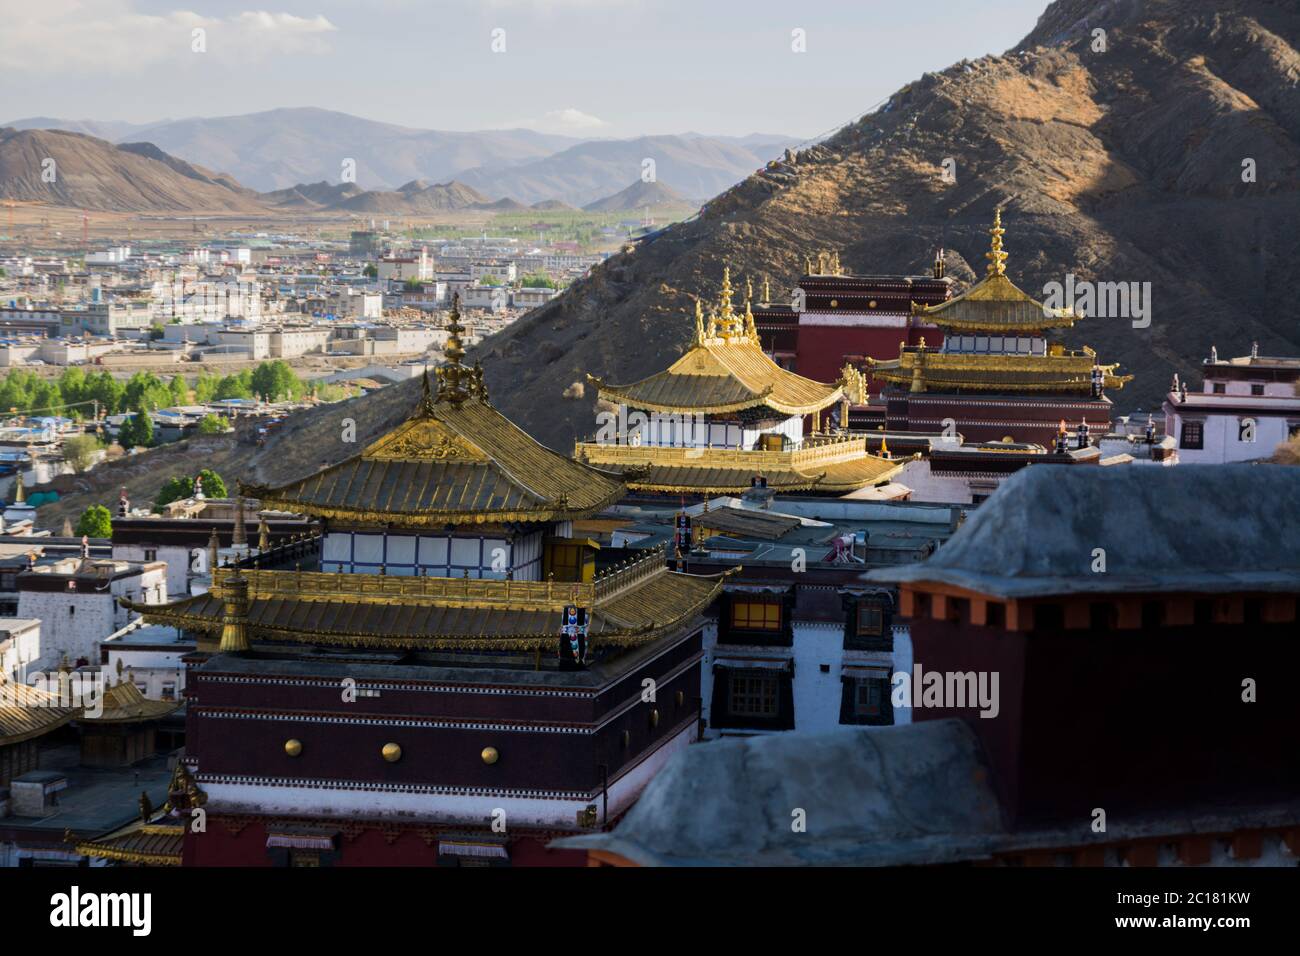 Tashi Lhunpo Monastery, Tibet Stock Photo